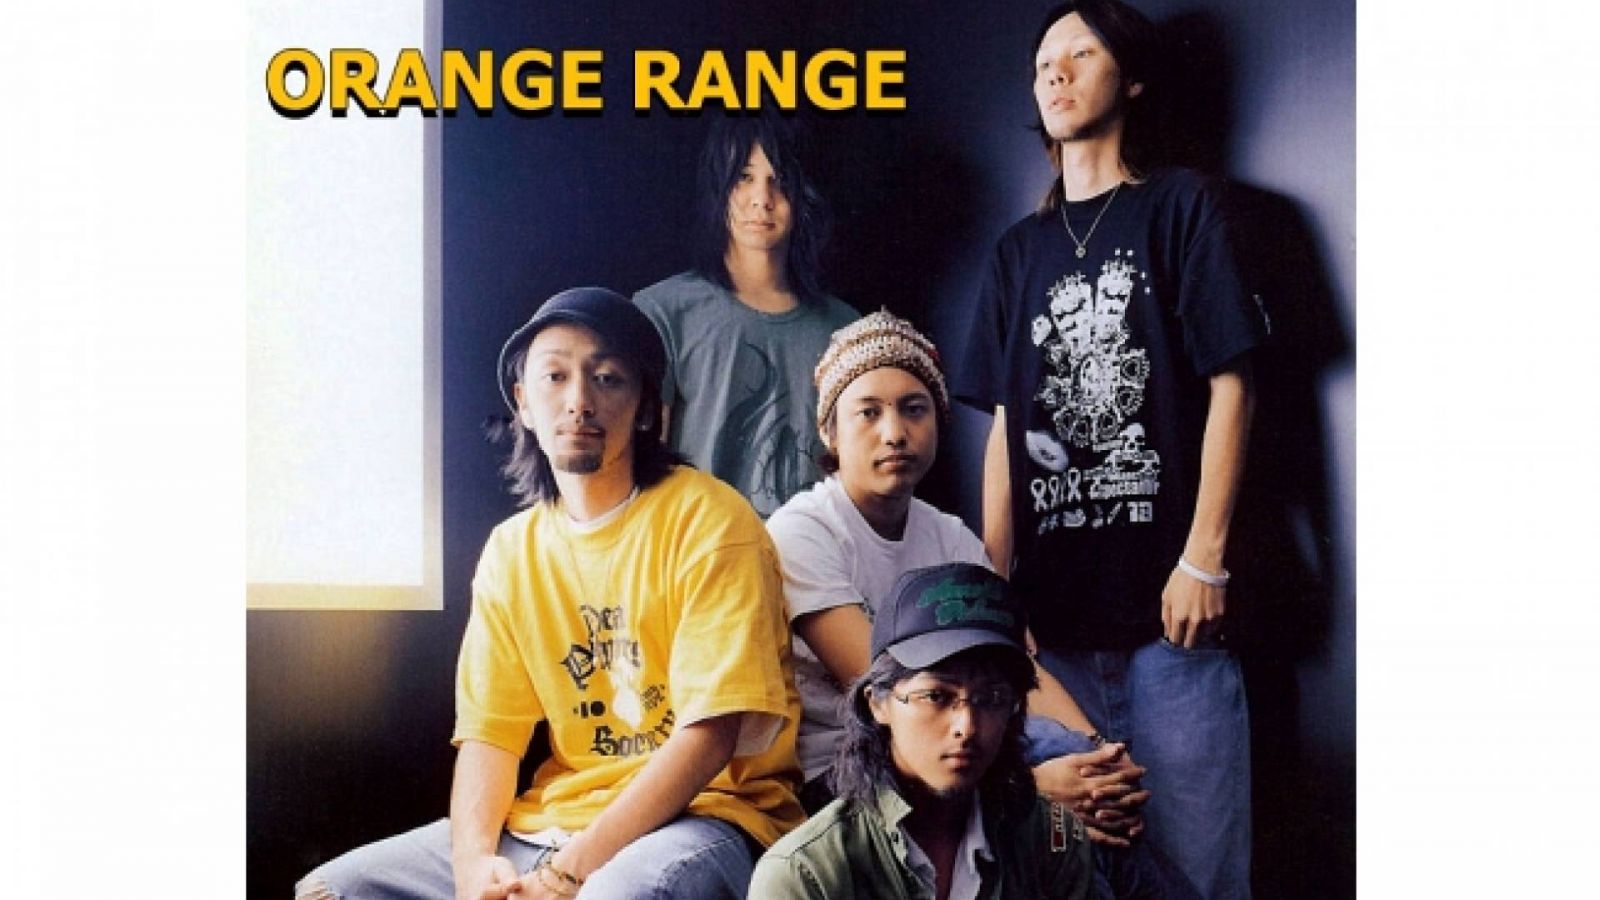 spark é o novo álbum do ORANGE RANGE © Japan Files.com, Orange Range